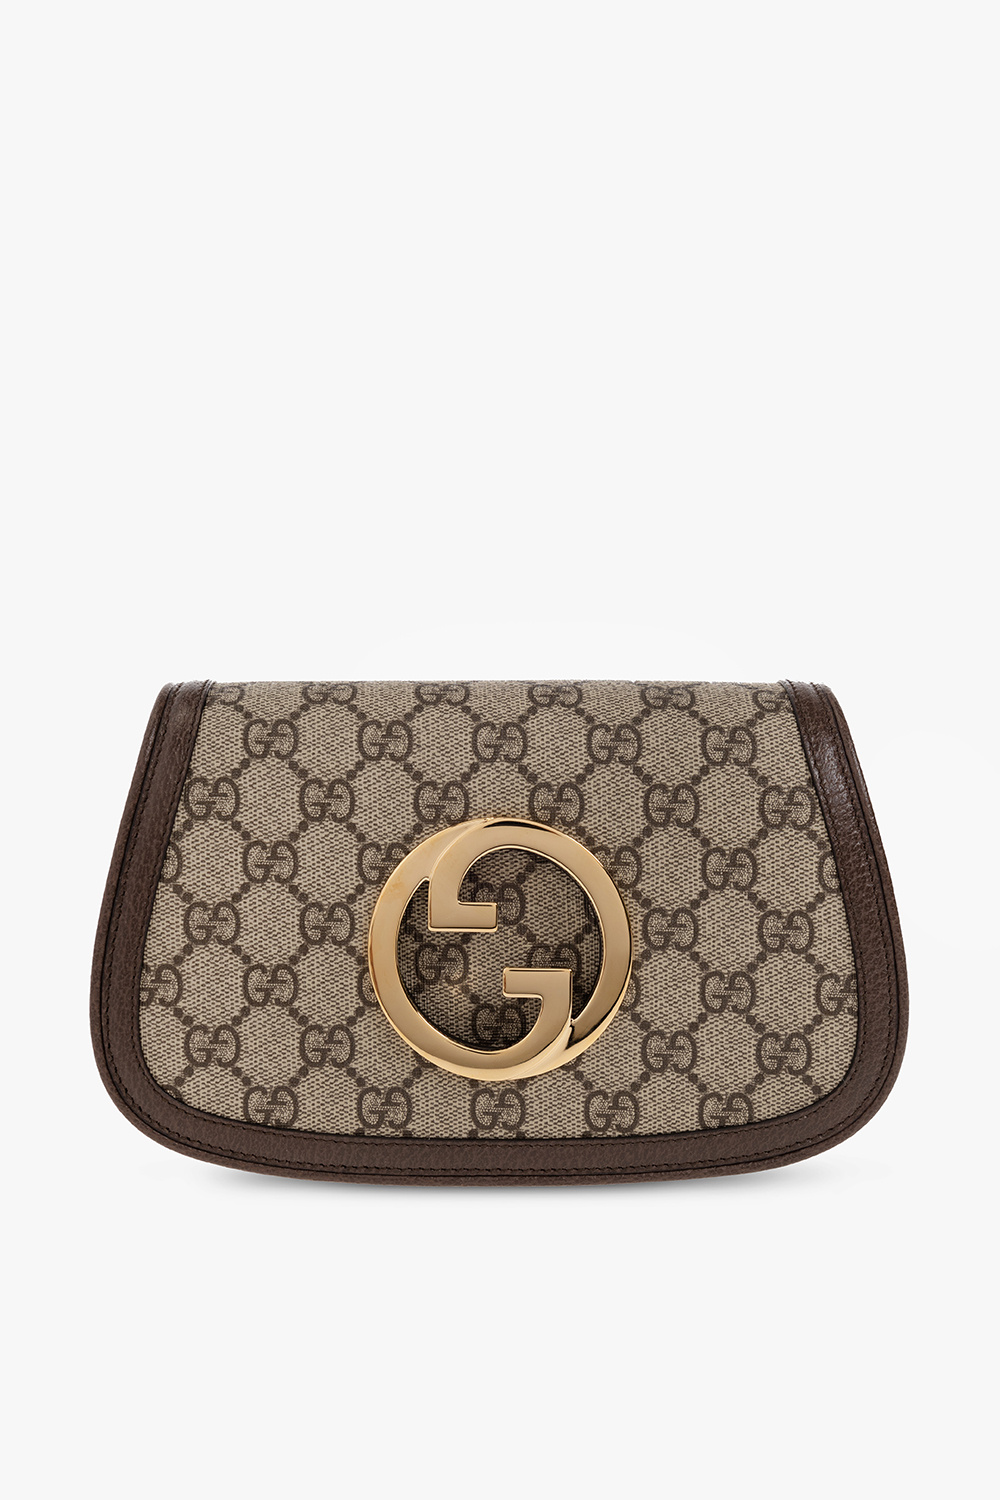 Gucci ‘Blondie’ belt bag